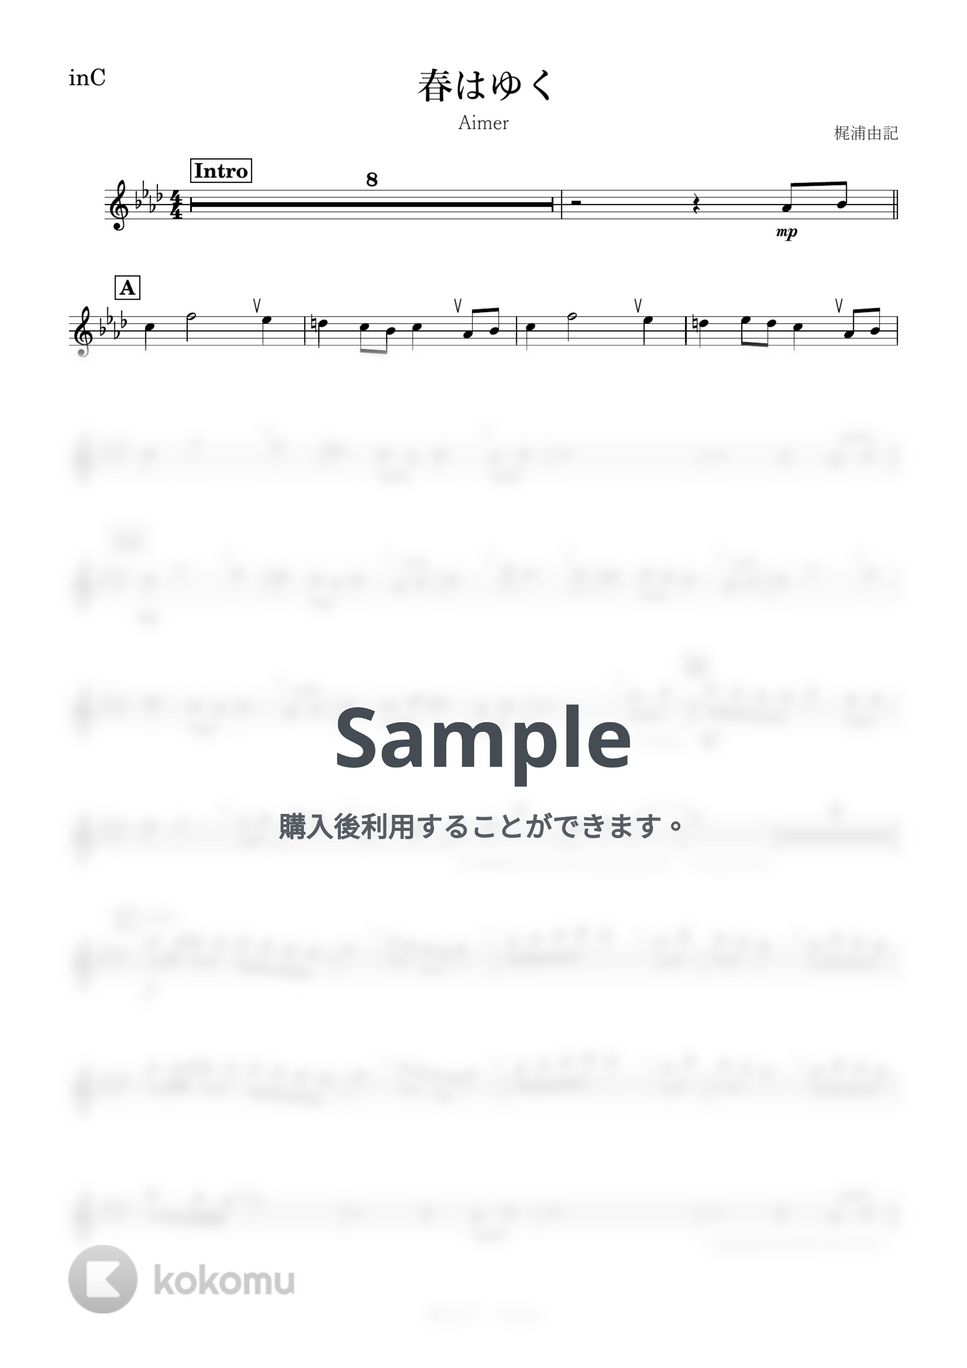 Aimer - 春はゆく (C) by kanamusic